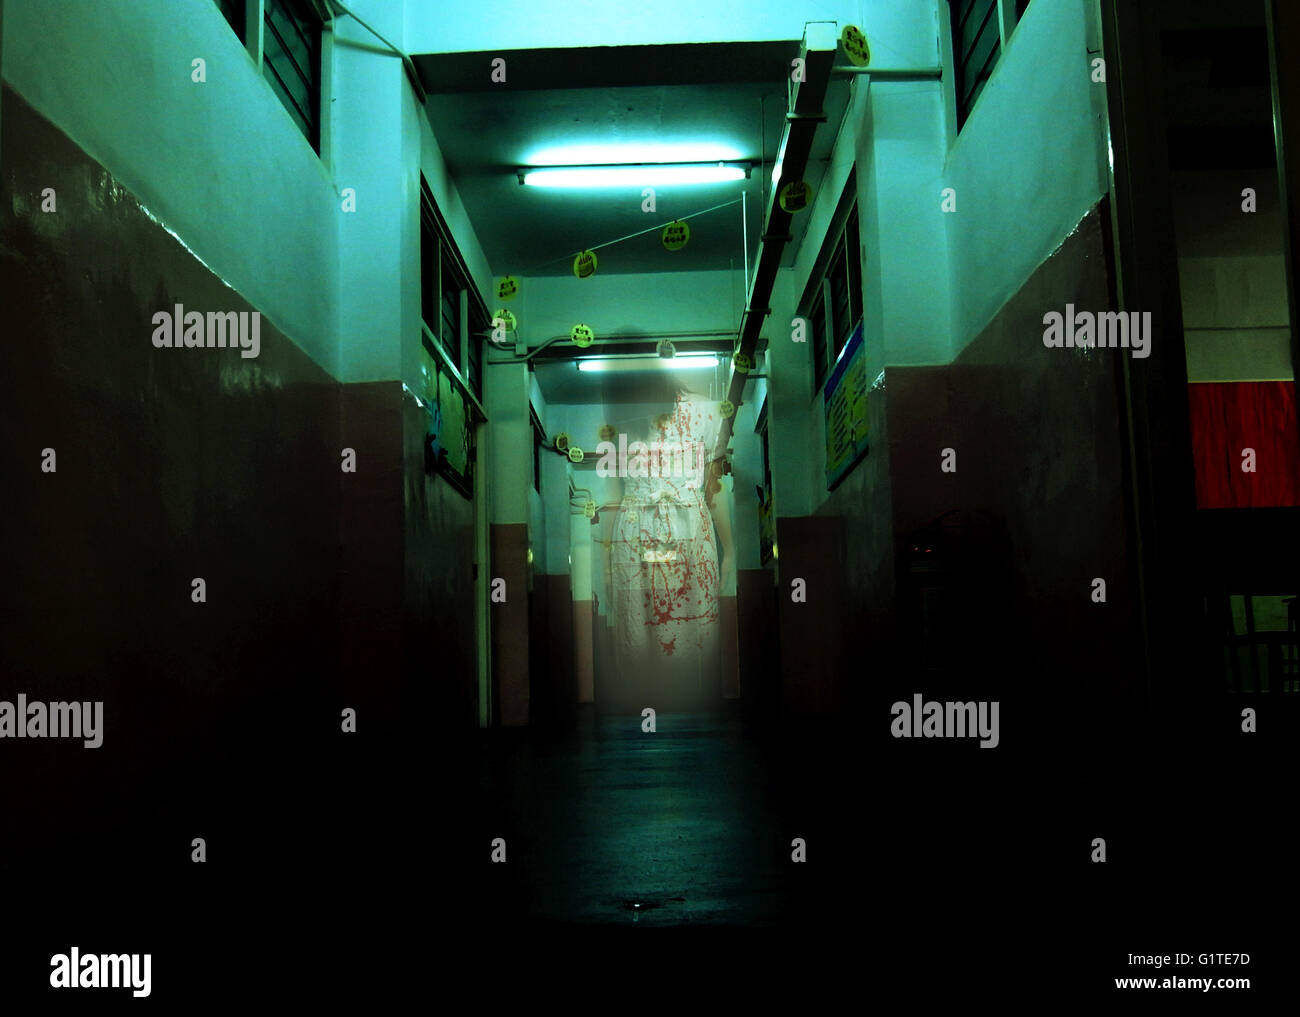 Una femmina di ghost usura panno bianco nel corridoio chinese ghost story spavento terribile sogno utente malintenzionato omicidio physco spirito incubo Foto Stock